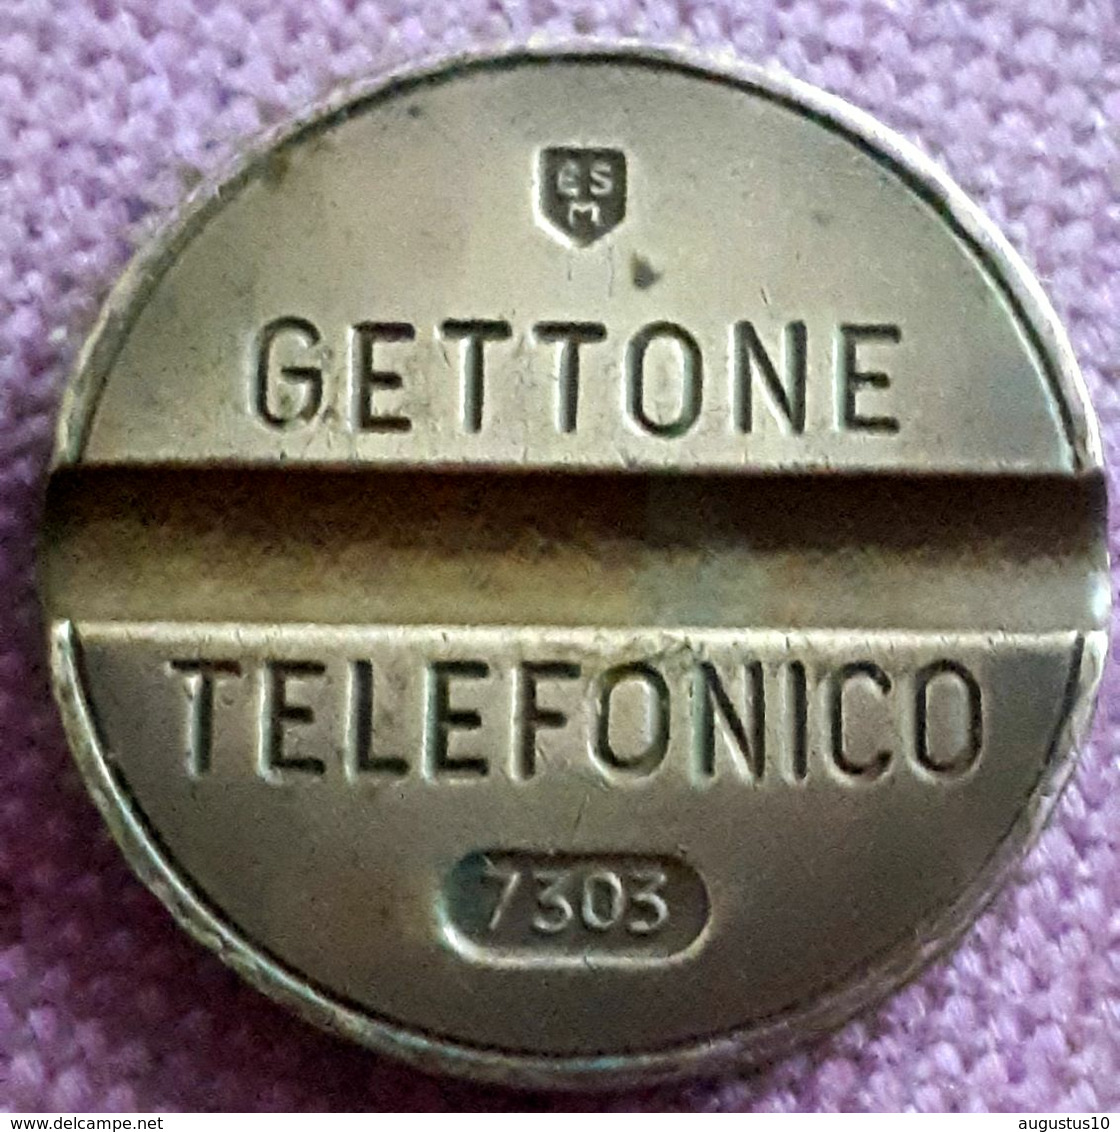 GETTONE TELEFONICO JETON ESM Milano SIGLIO 7303 - Monetari/ Di Necessità